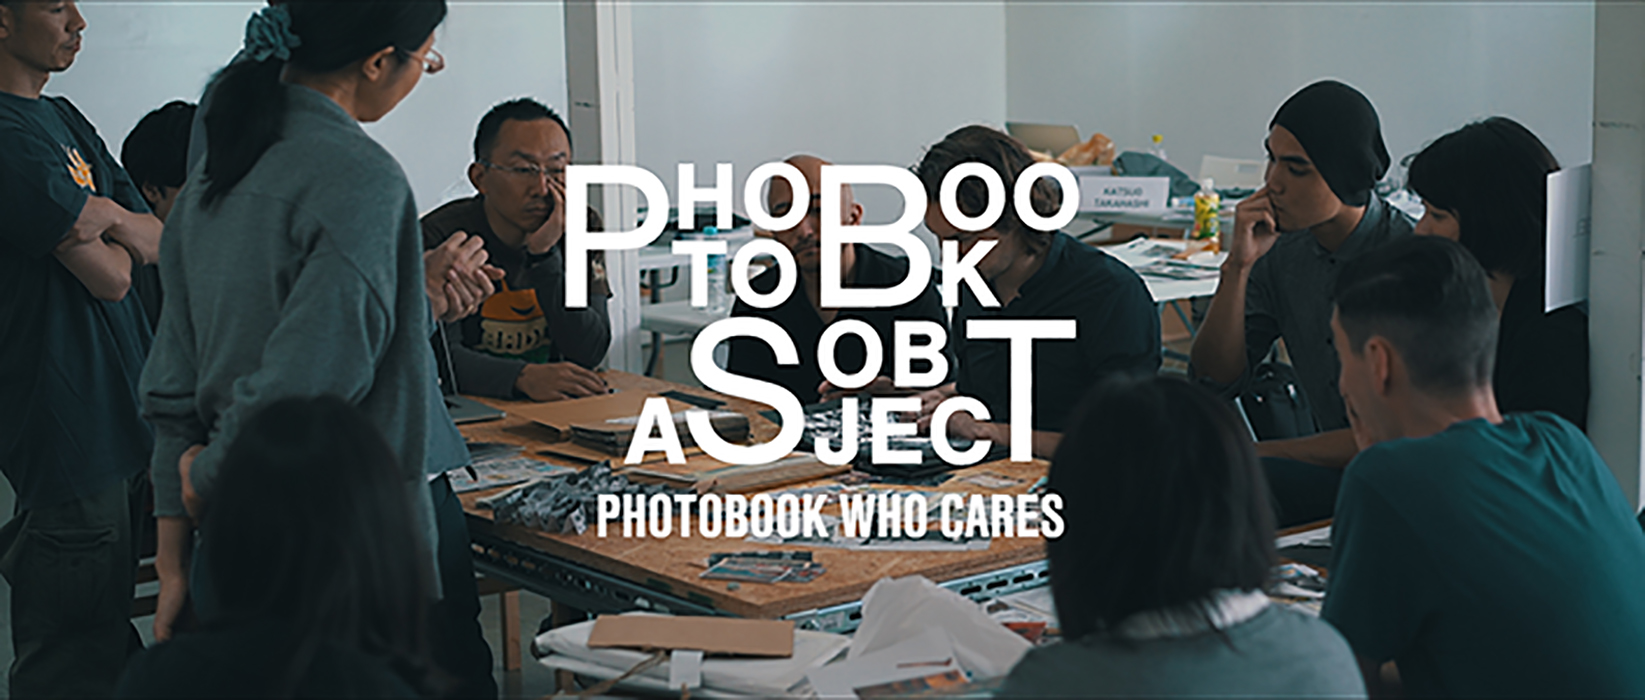 Photobook As Object